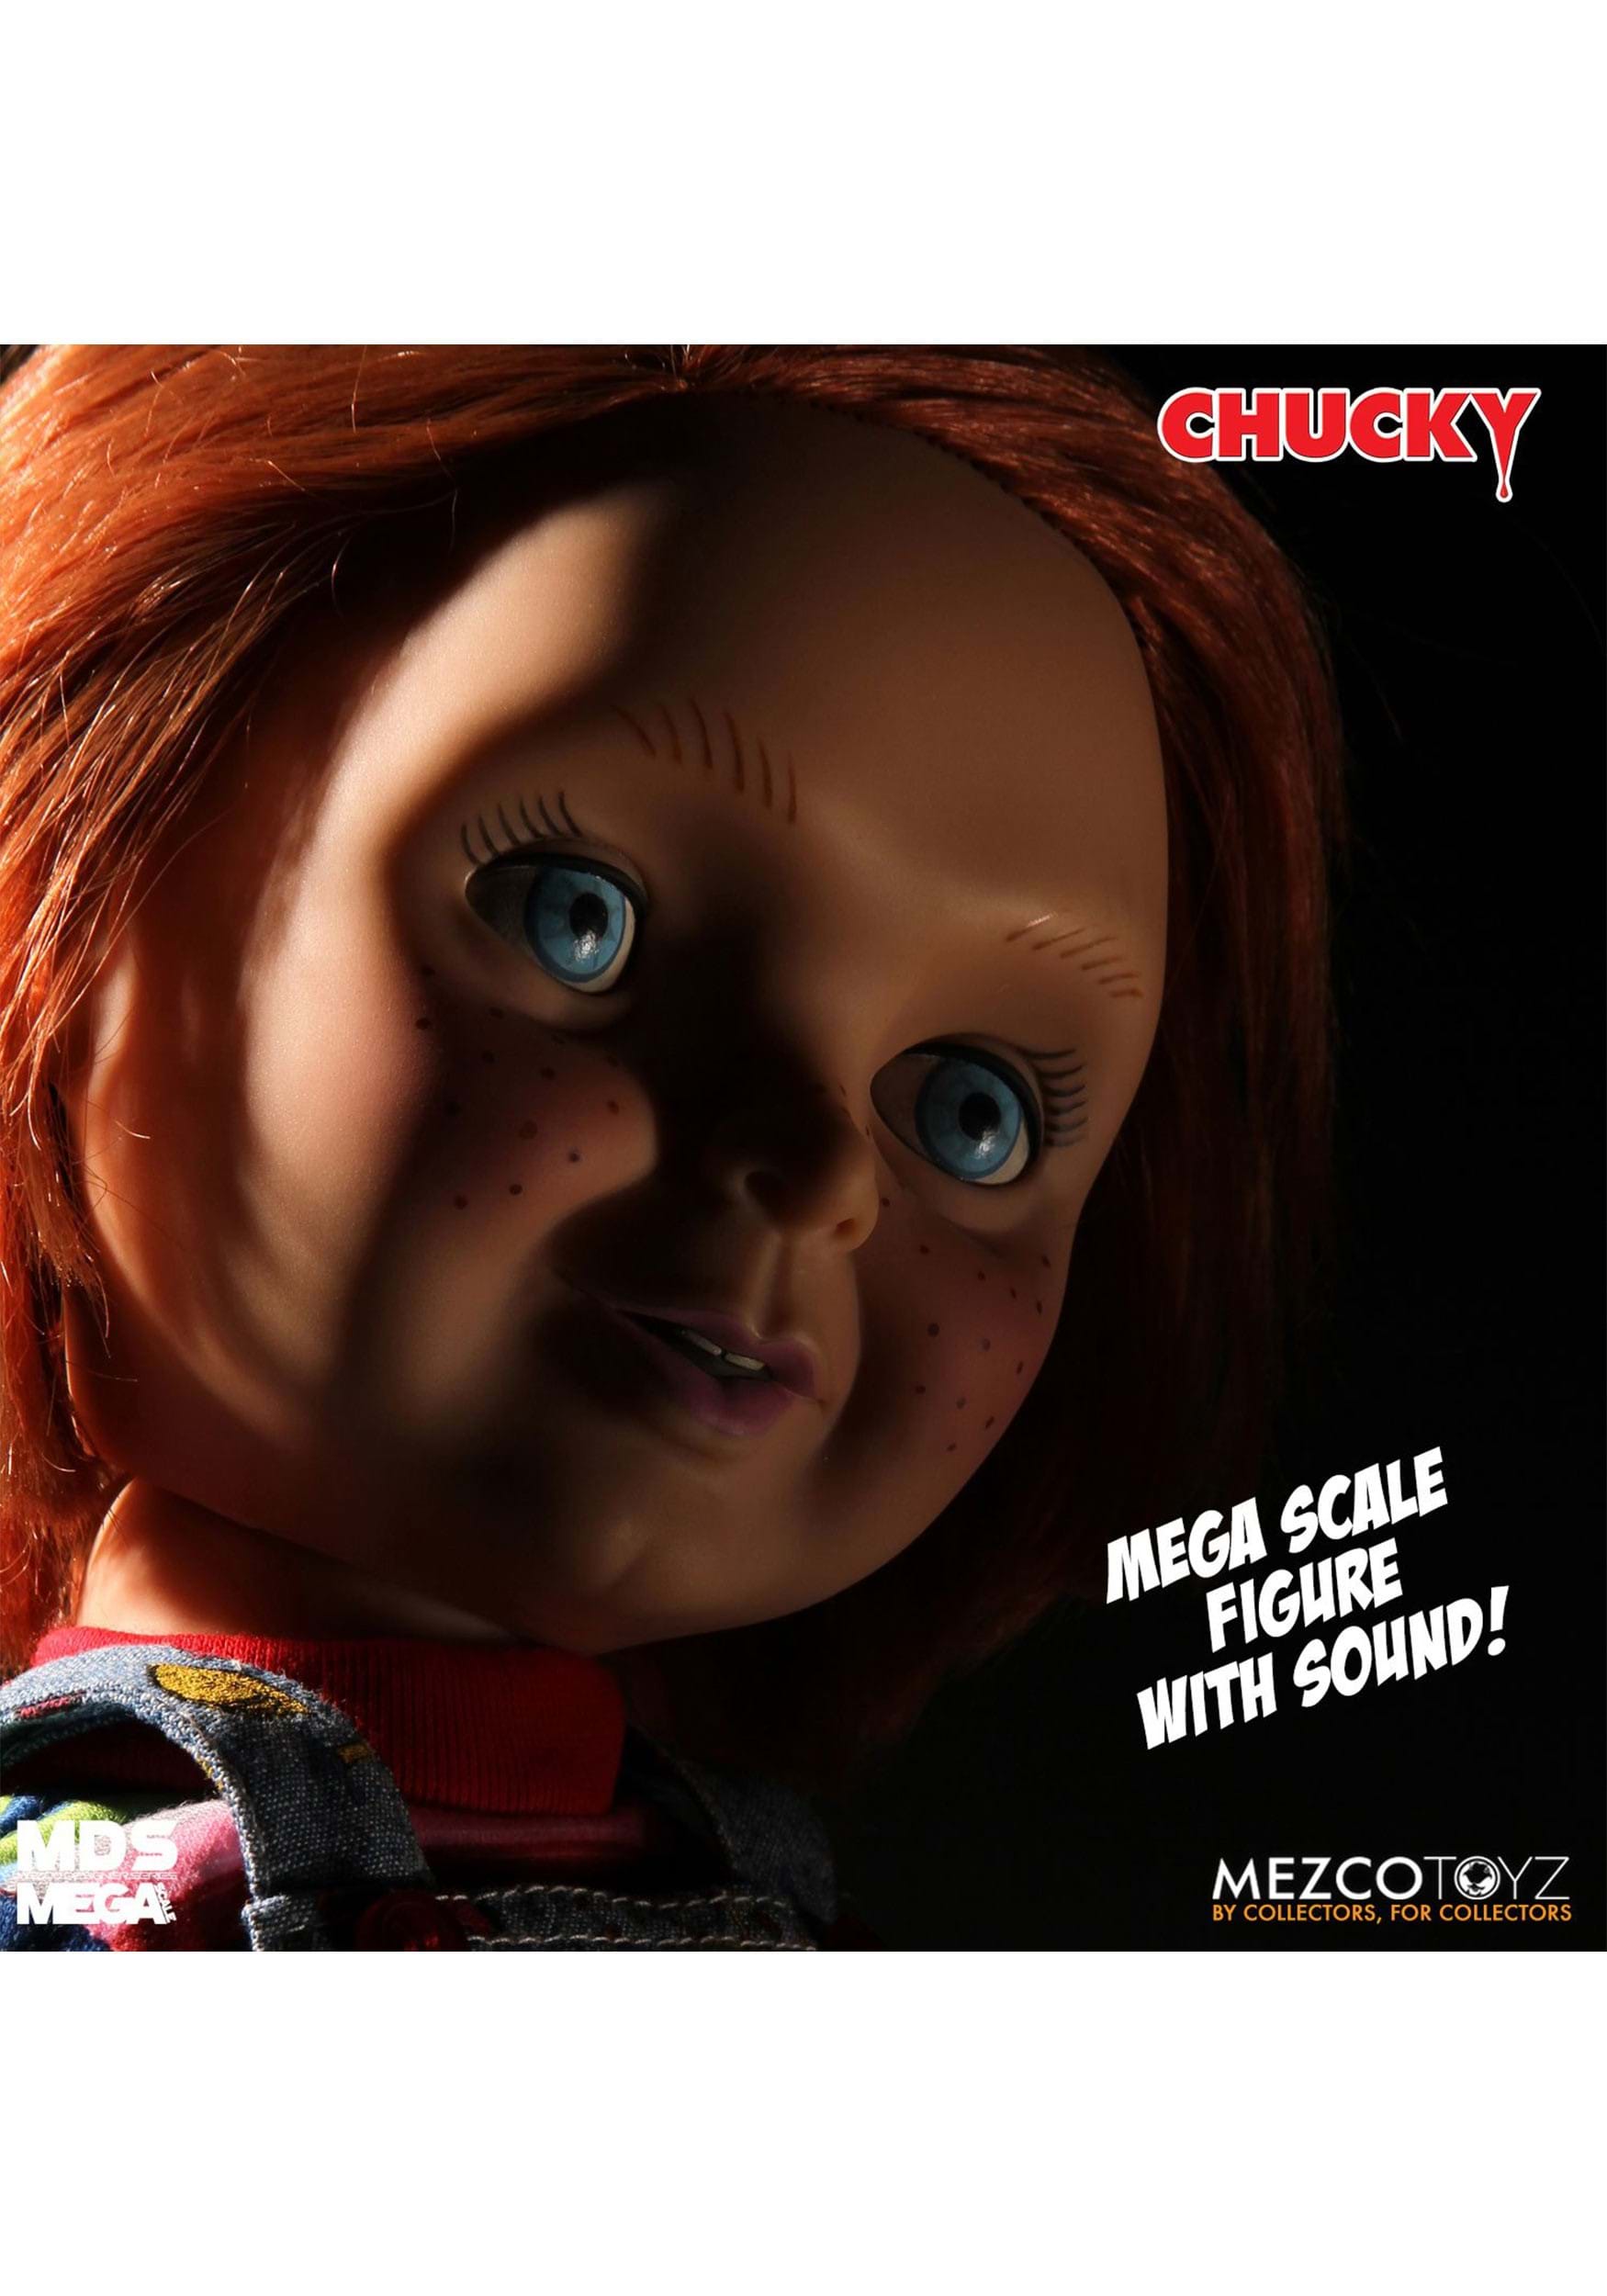 15 Good Guys Talking Doll Chucky , Chucky Dolls